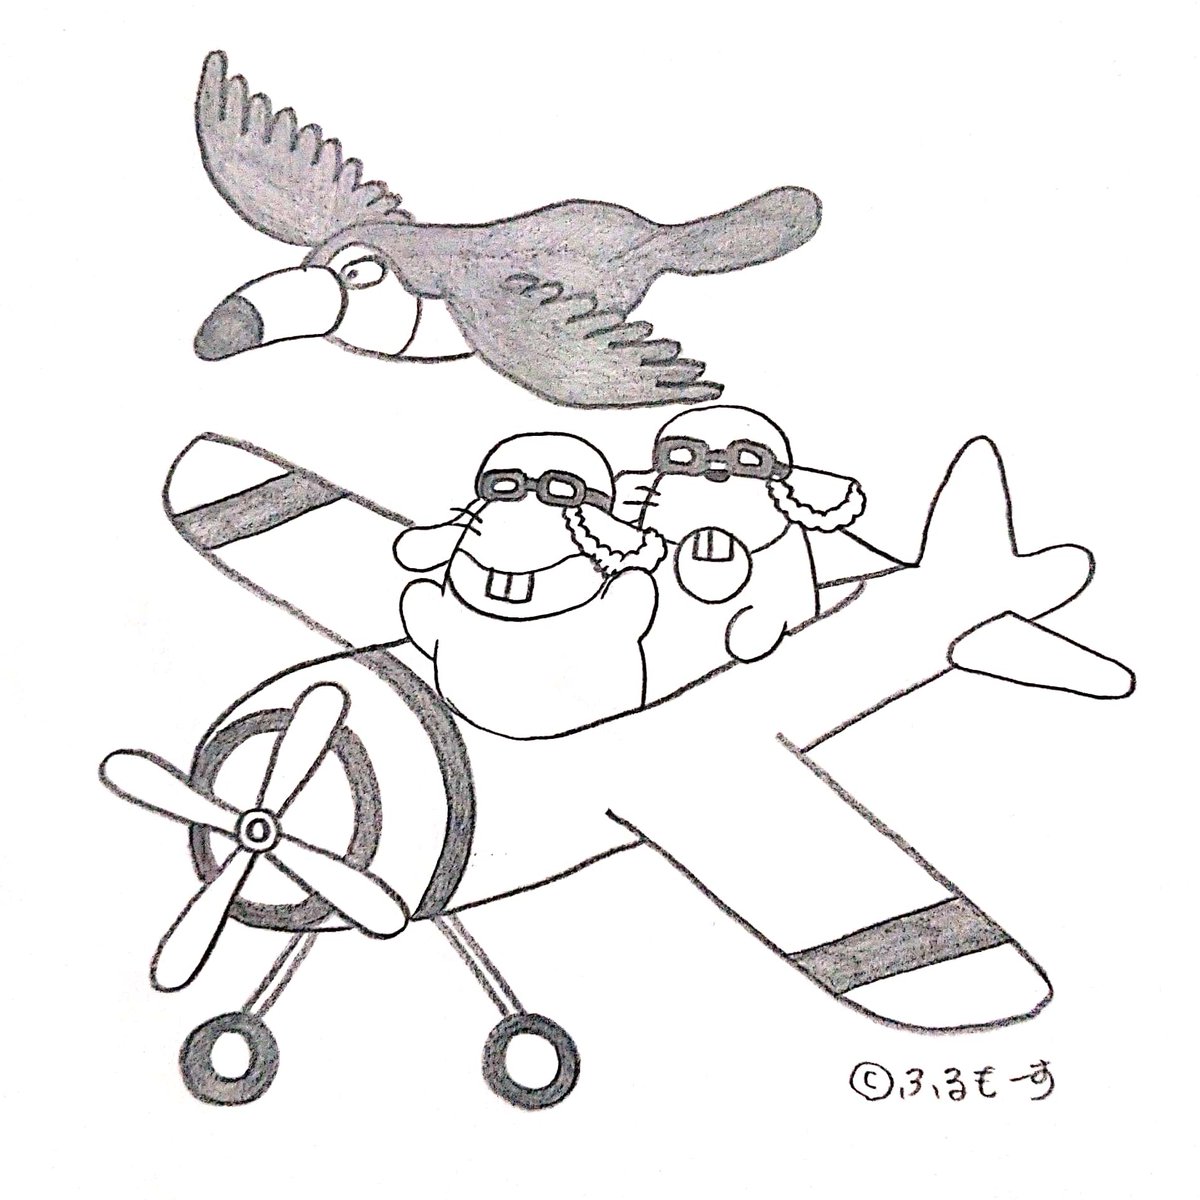 ふるもーす 空想イラスト作家 飛行機で空中遊泳を楽しむビーバー兄弟 ふるもーす 飛行機イラスト ゆるキャラ イラスト好きな人とつながりたい オリジナルキャラクター ビーバー 可愛いイラスト キャライラストクター オリキャラ 動物イラスト